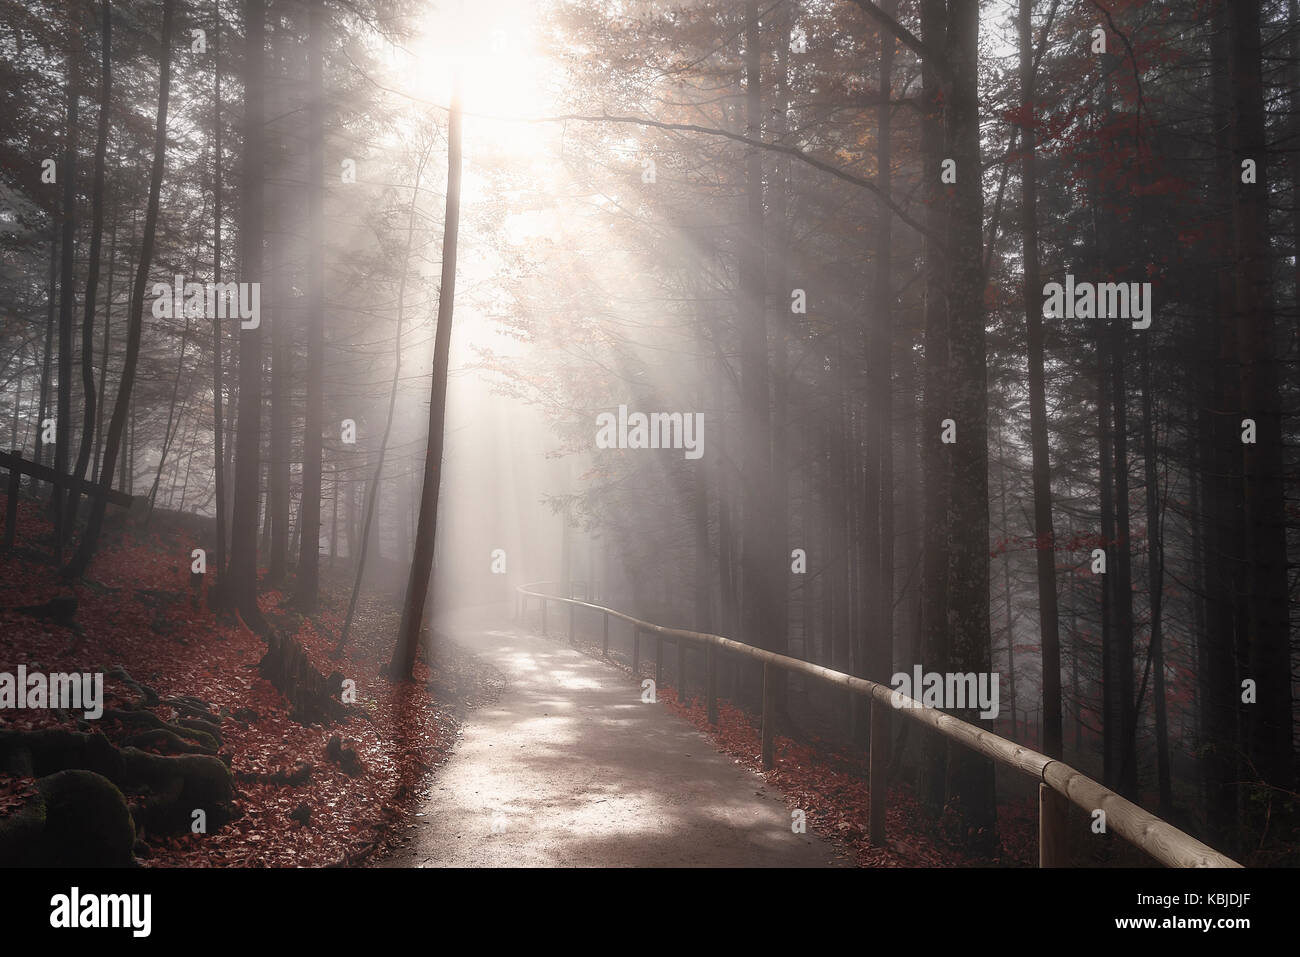 Route sans fin traversant une forêt sombre, dans les couleurs de l'automne, enveloppé par la brume et éclairé par les rayons du soleil, à Fussen, Allemagne. Banque D'Images